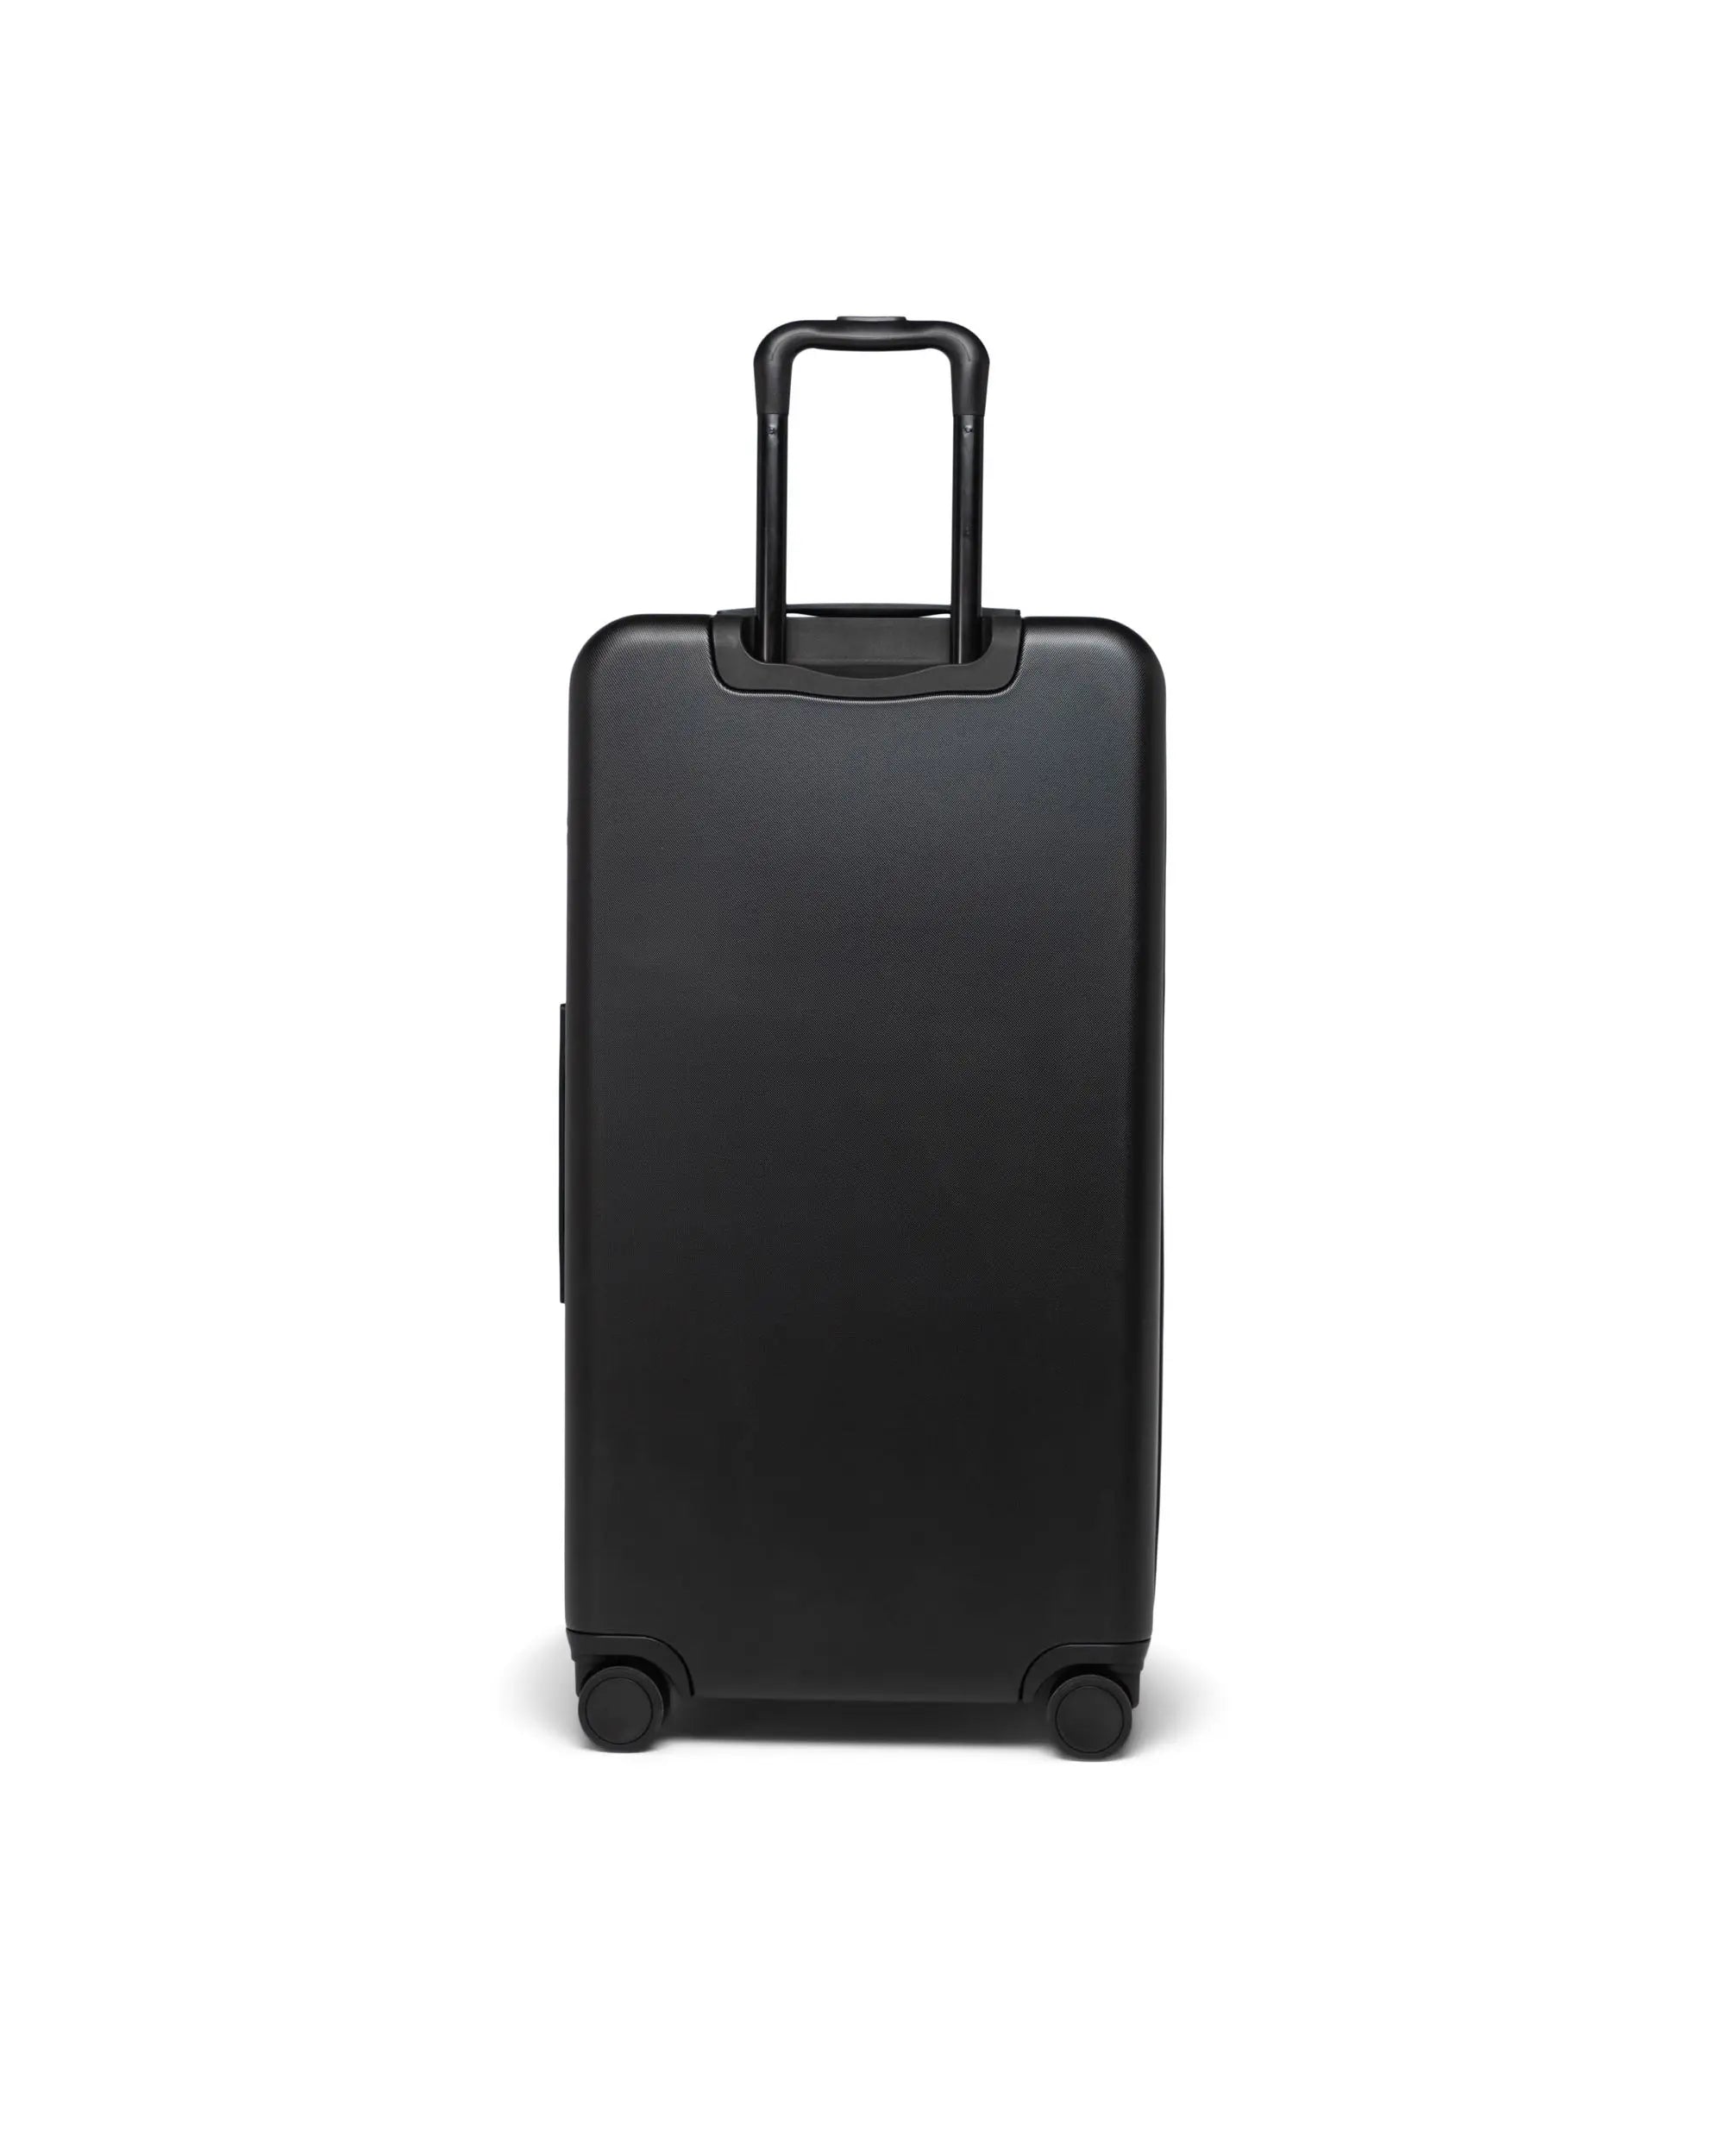 Hastings Home Luggage Scale 1x1x1 Black Nylon Hardshell Luggage